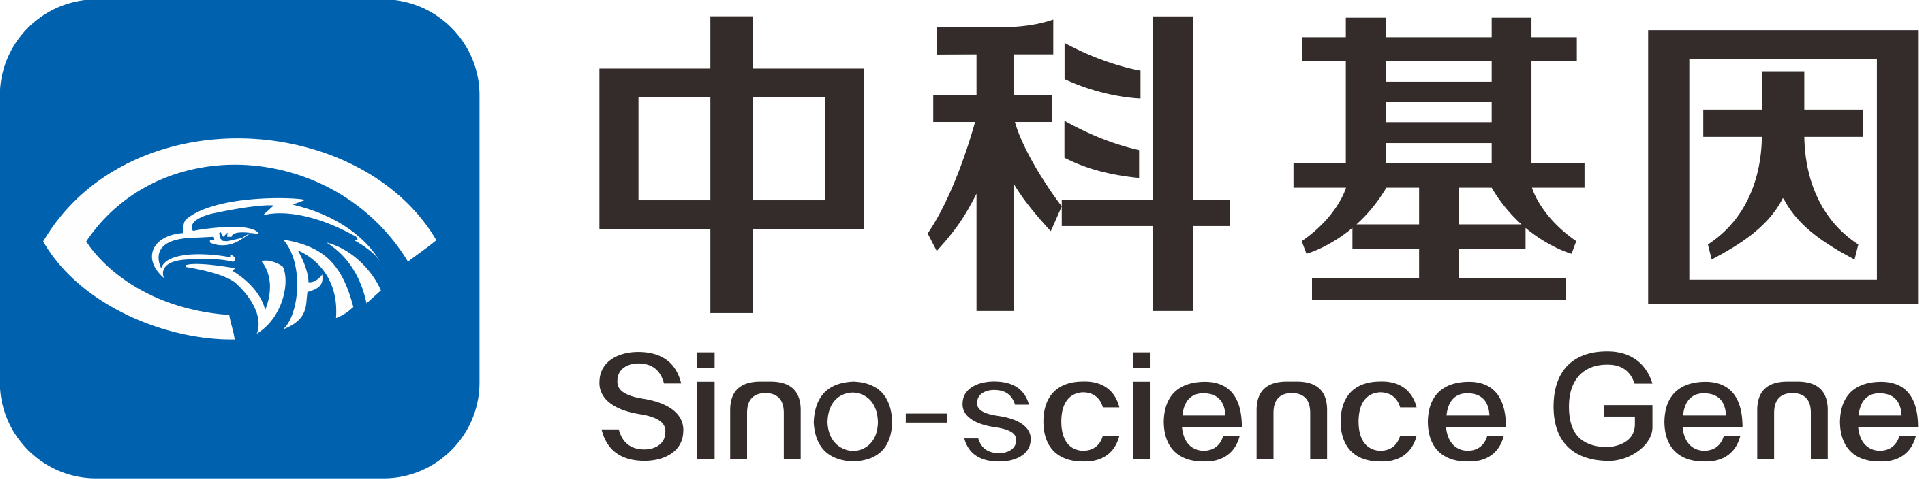 北京中科基因技术股份有限公司-中科基因